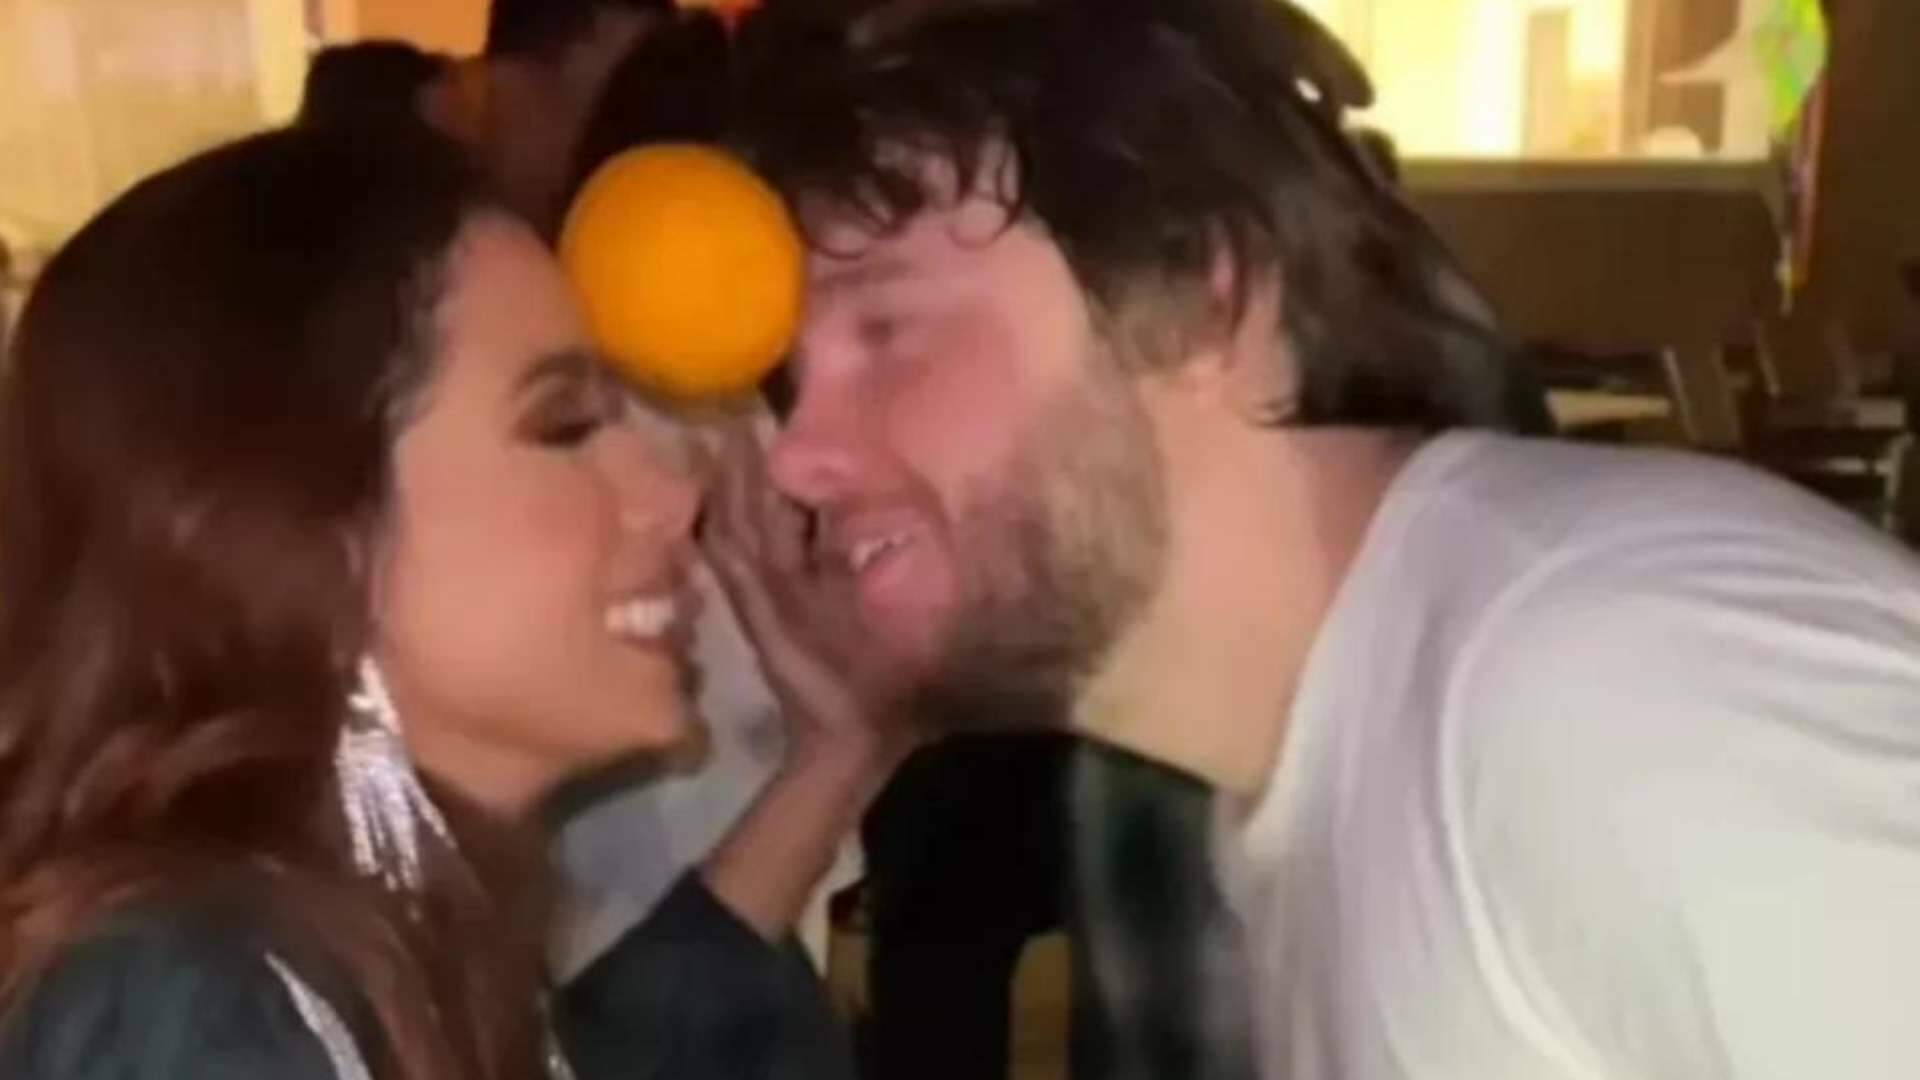 Anitta assume namoro ao aparecer em vídeo com homem na cama: “Agora foi” - Metropolitana FM